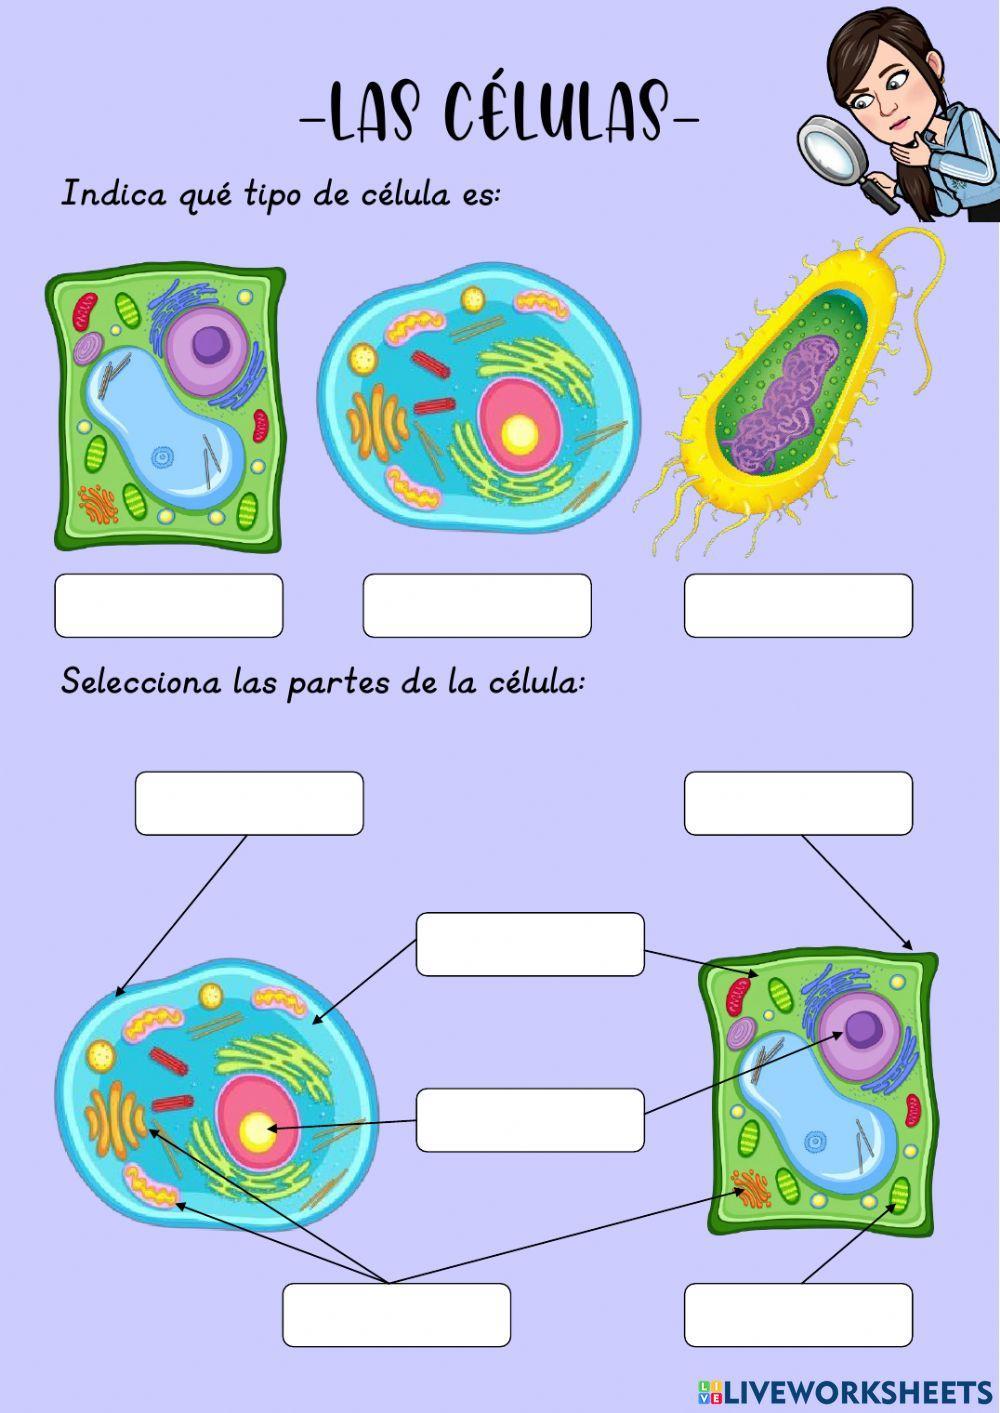 Las células